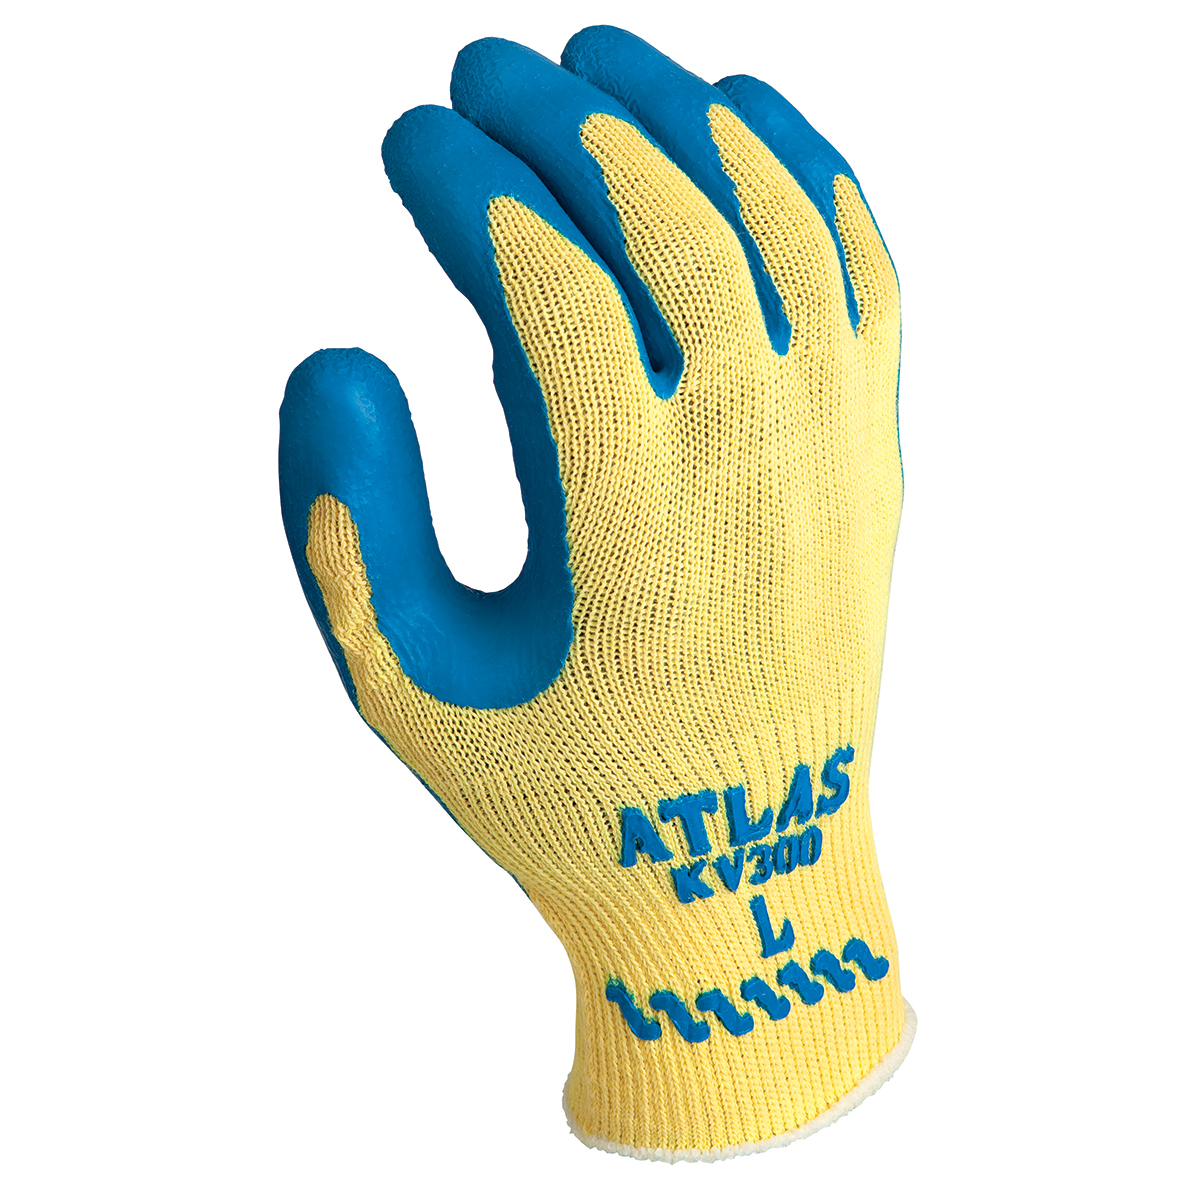 SHOWA® Size 10 ATLAS® KV300 10 Gauge DuPont™ Kevlar® Cut Resistant Gloves With Rubber Coating